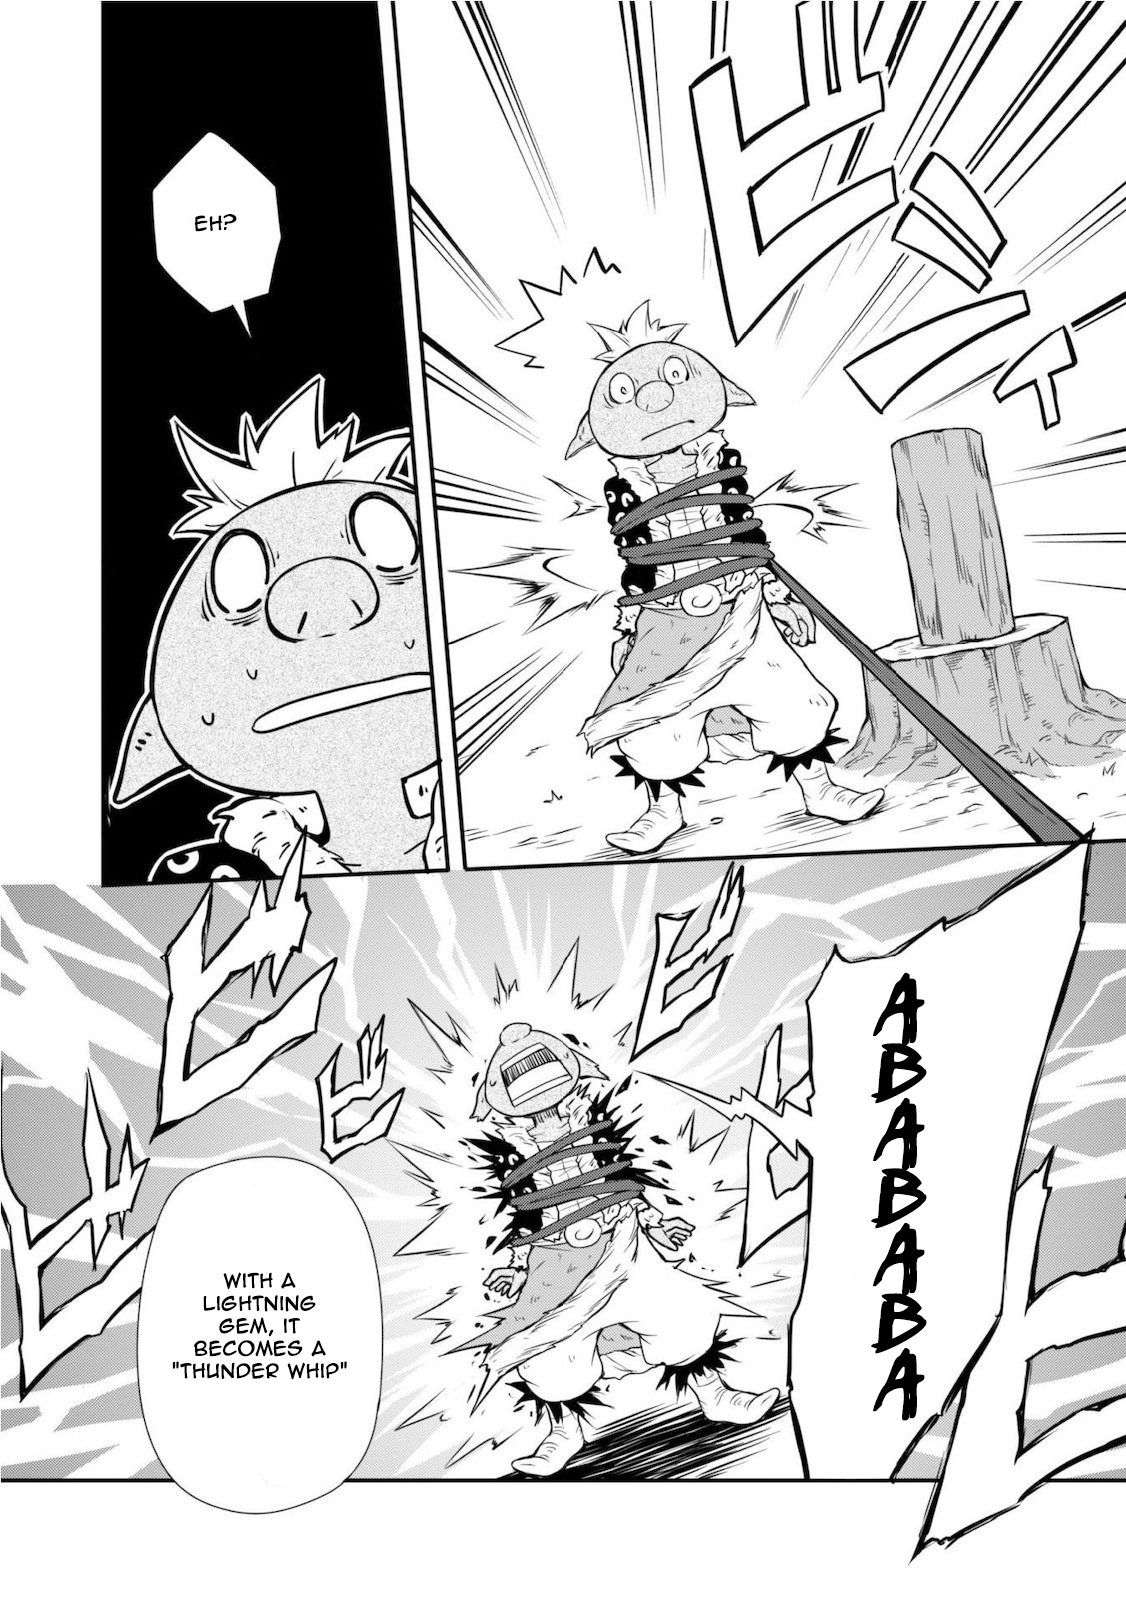 Tensei Shitara Slime Datta Ken: Mabutsu no Kuni no Arukikata Vol.1 Ch.3